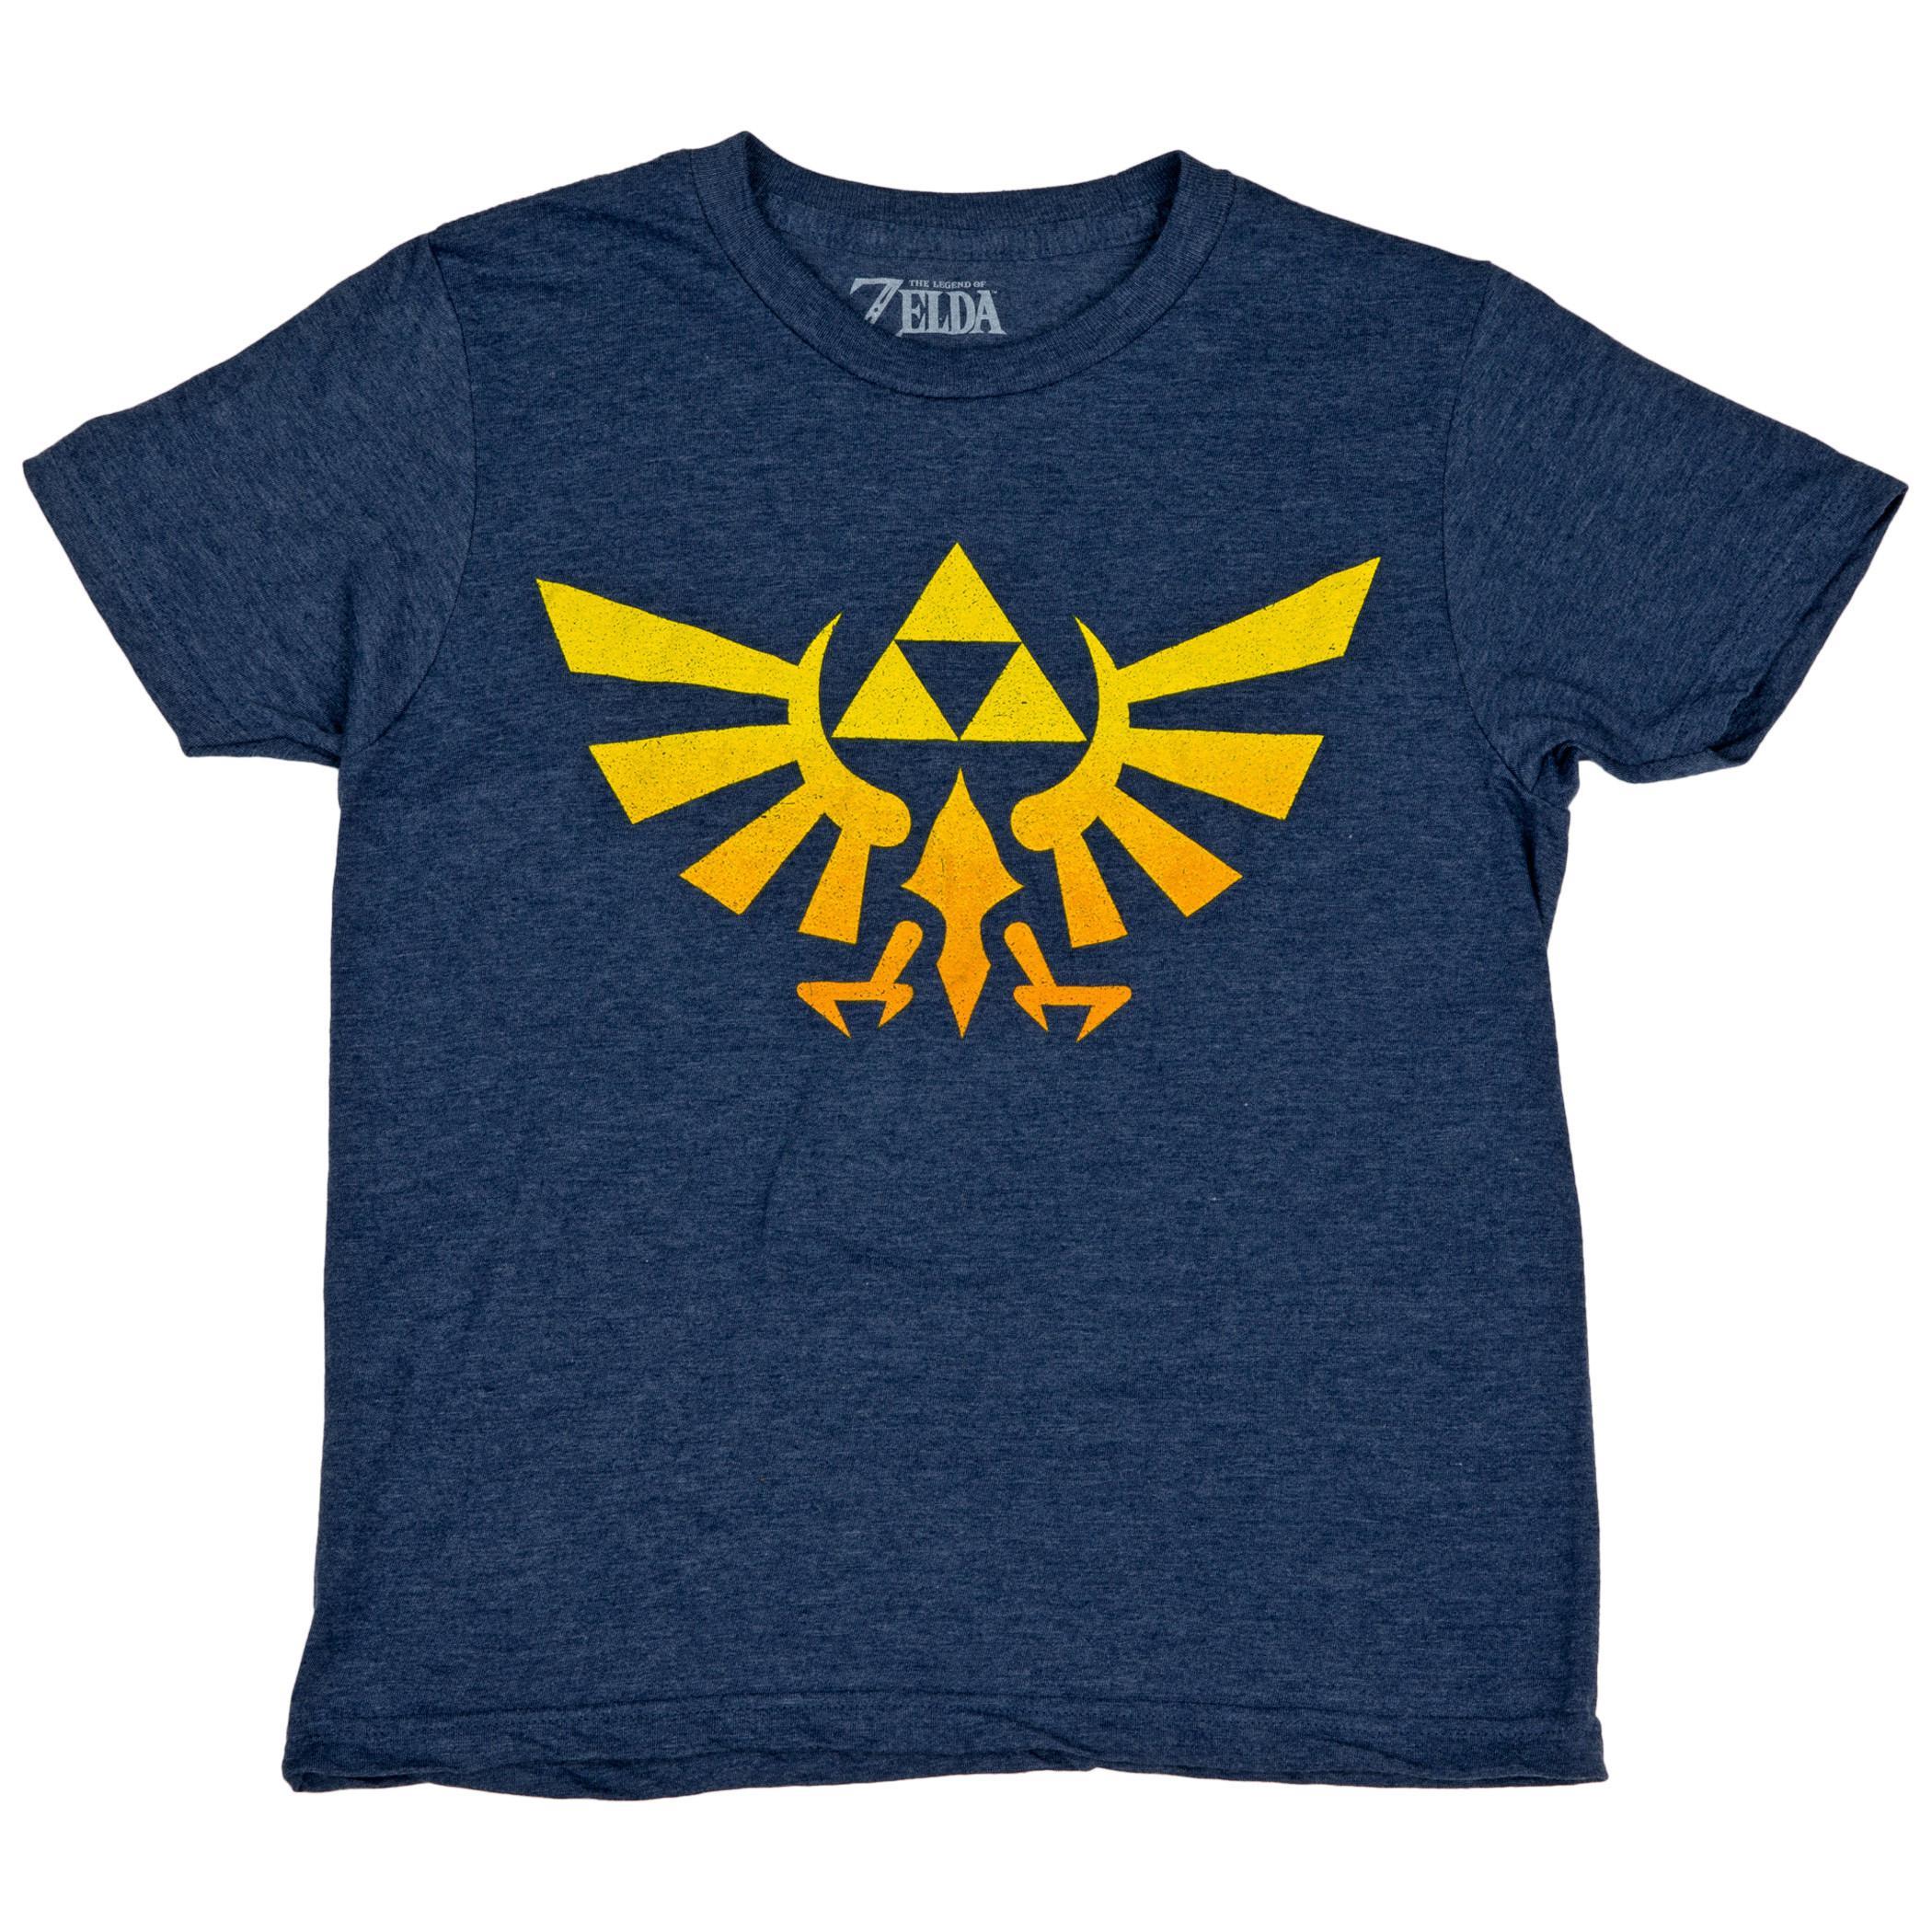 Nintendo The Legend of Zelda Royal Crest Youth T-Shirt Large